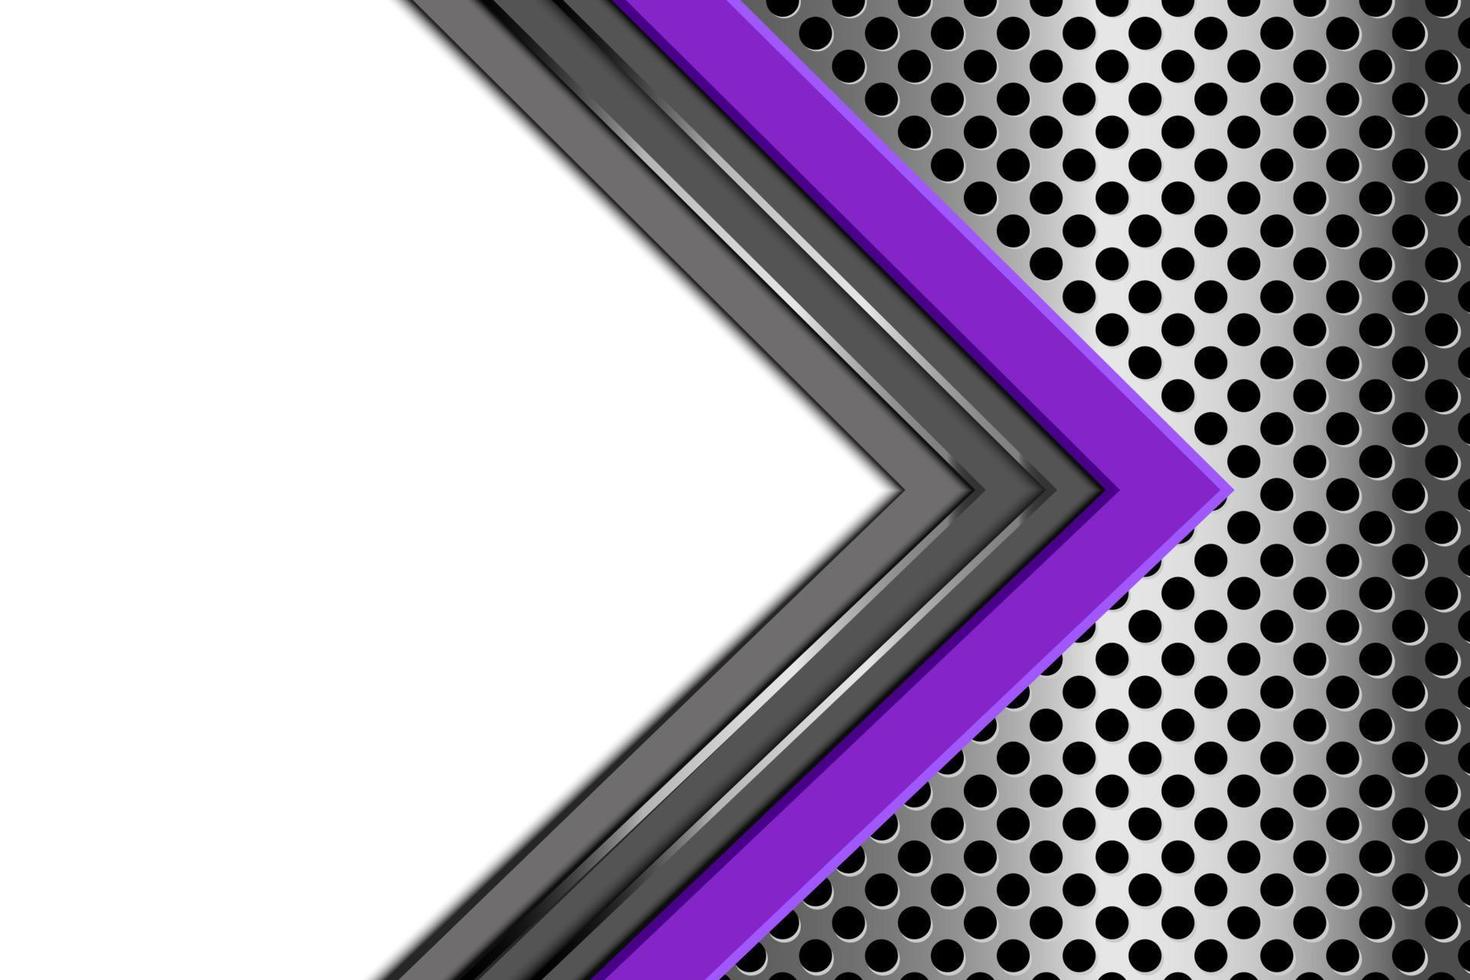 abstrakte lila graue kreispfeilrichtung mit leerzeichen auf metallkreismaschendesign moderne futuristische technologiehintergrundvektorillustration. vektor